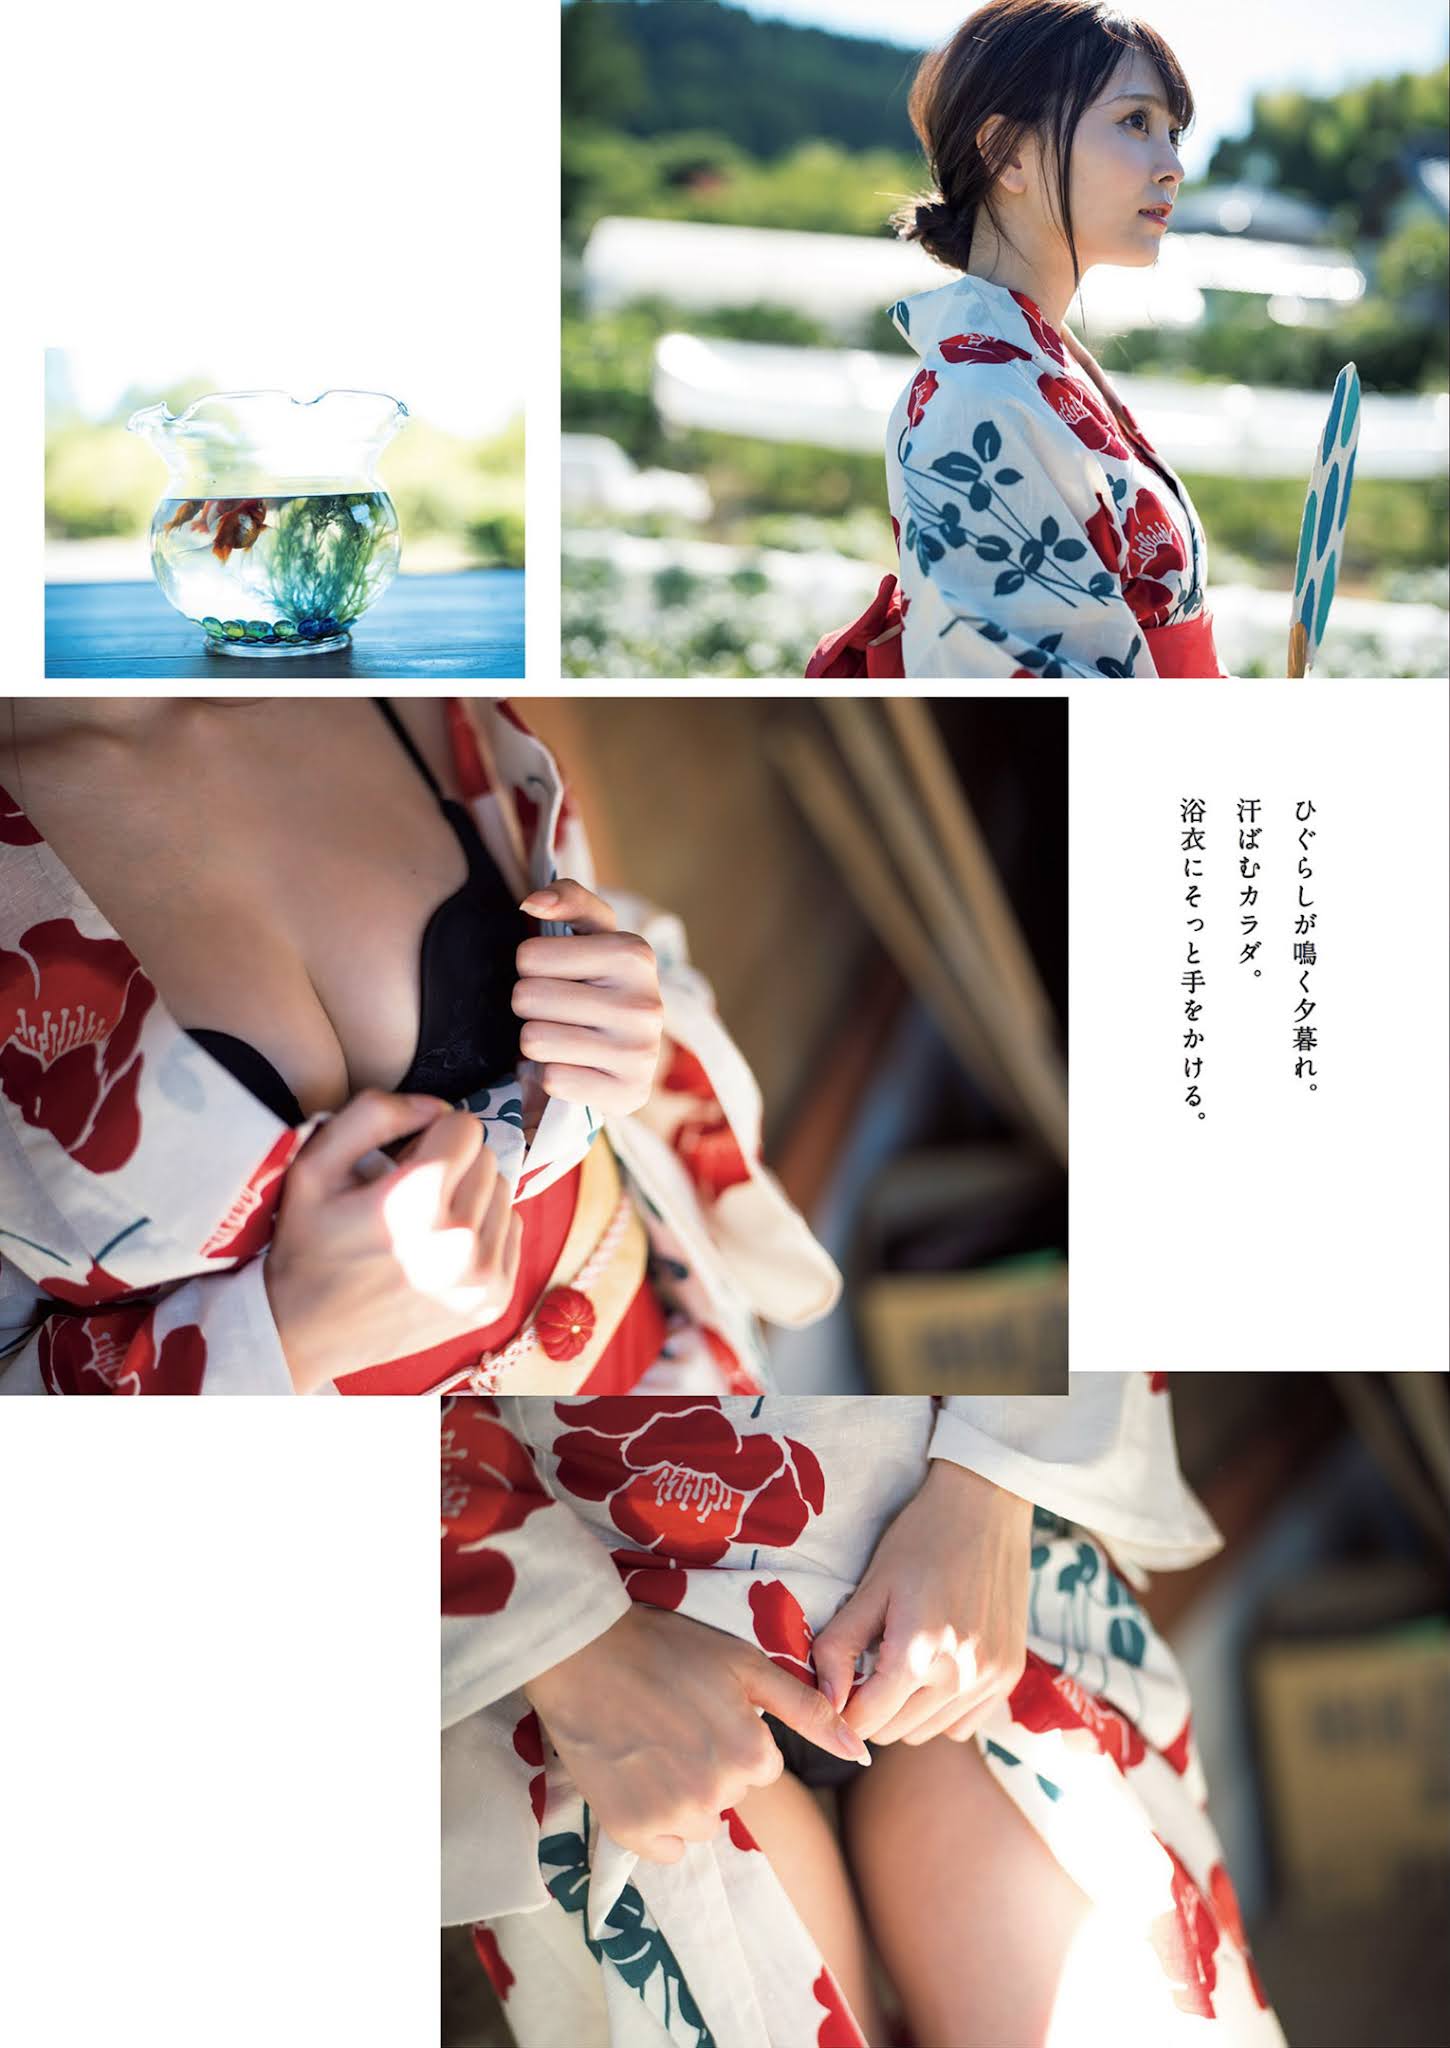 Risa Aoki 青木りさ, Weekly Playboy 2021 No.36-37 (週刊プレイボーイ 2021年36-37号)